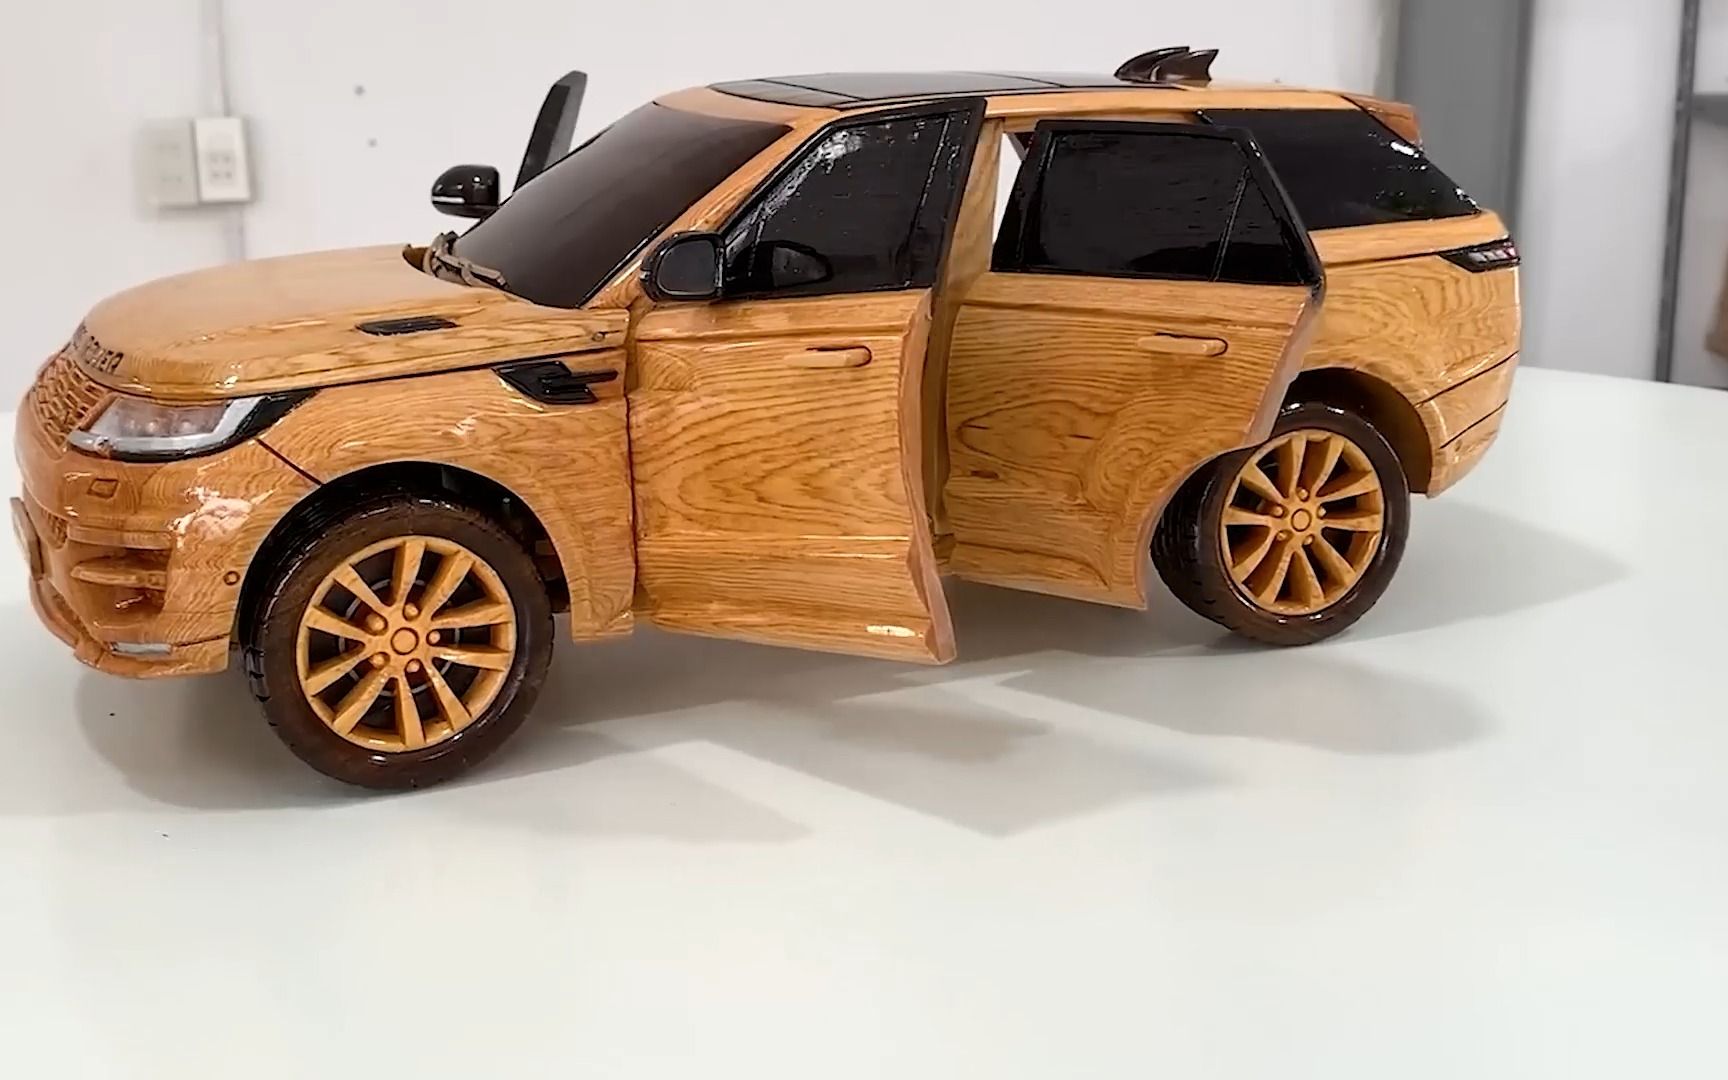 用木头制作汽车模型,手工制作,创意手工